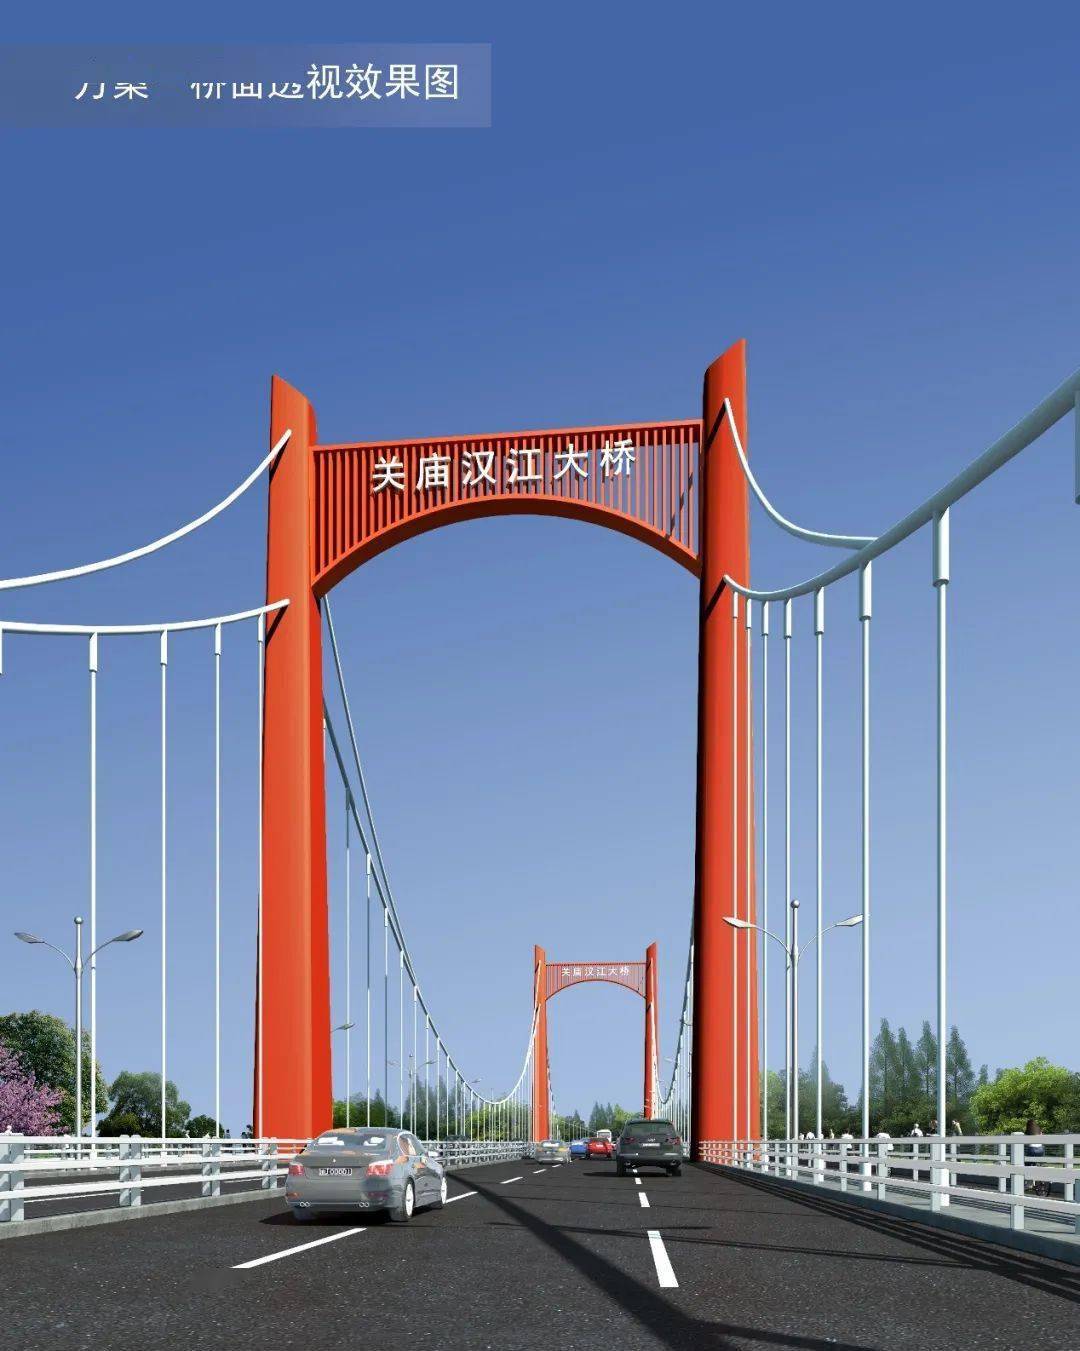 【携程攻略】武汉古田桥景点,武汉汉江上的江汉六桥，也被称为古田桥。被誉为现在武汉汉江上最美的…